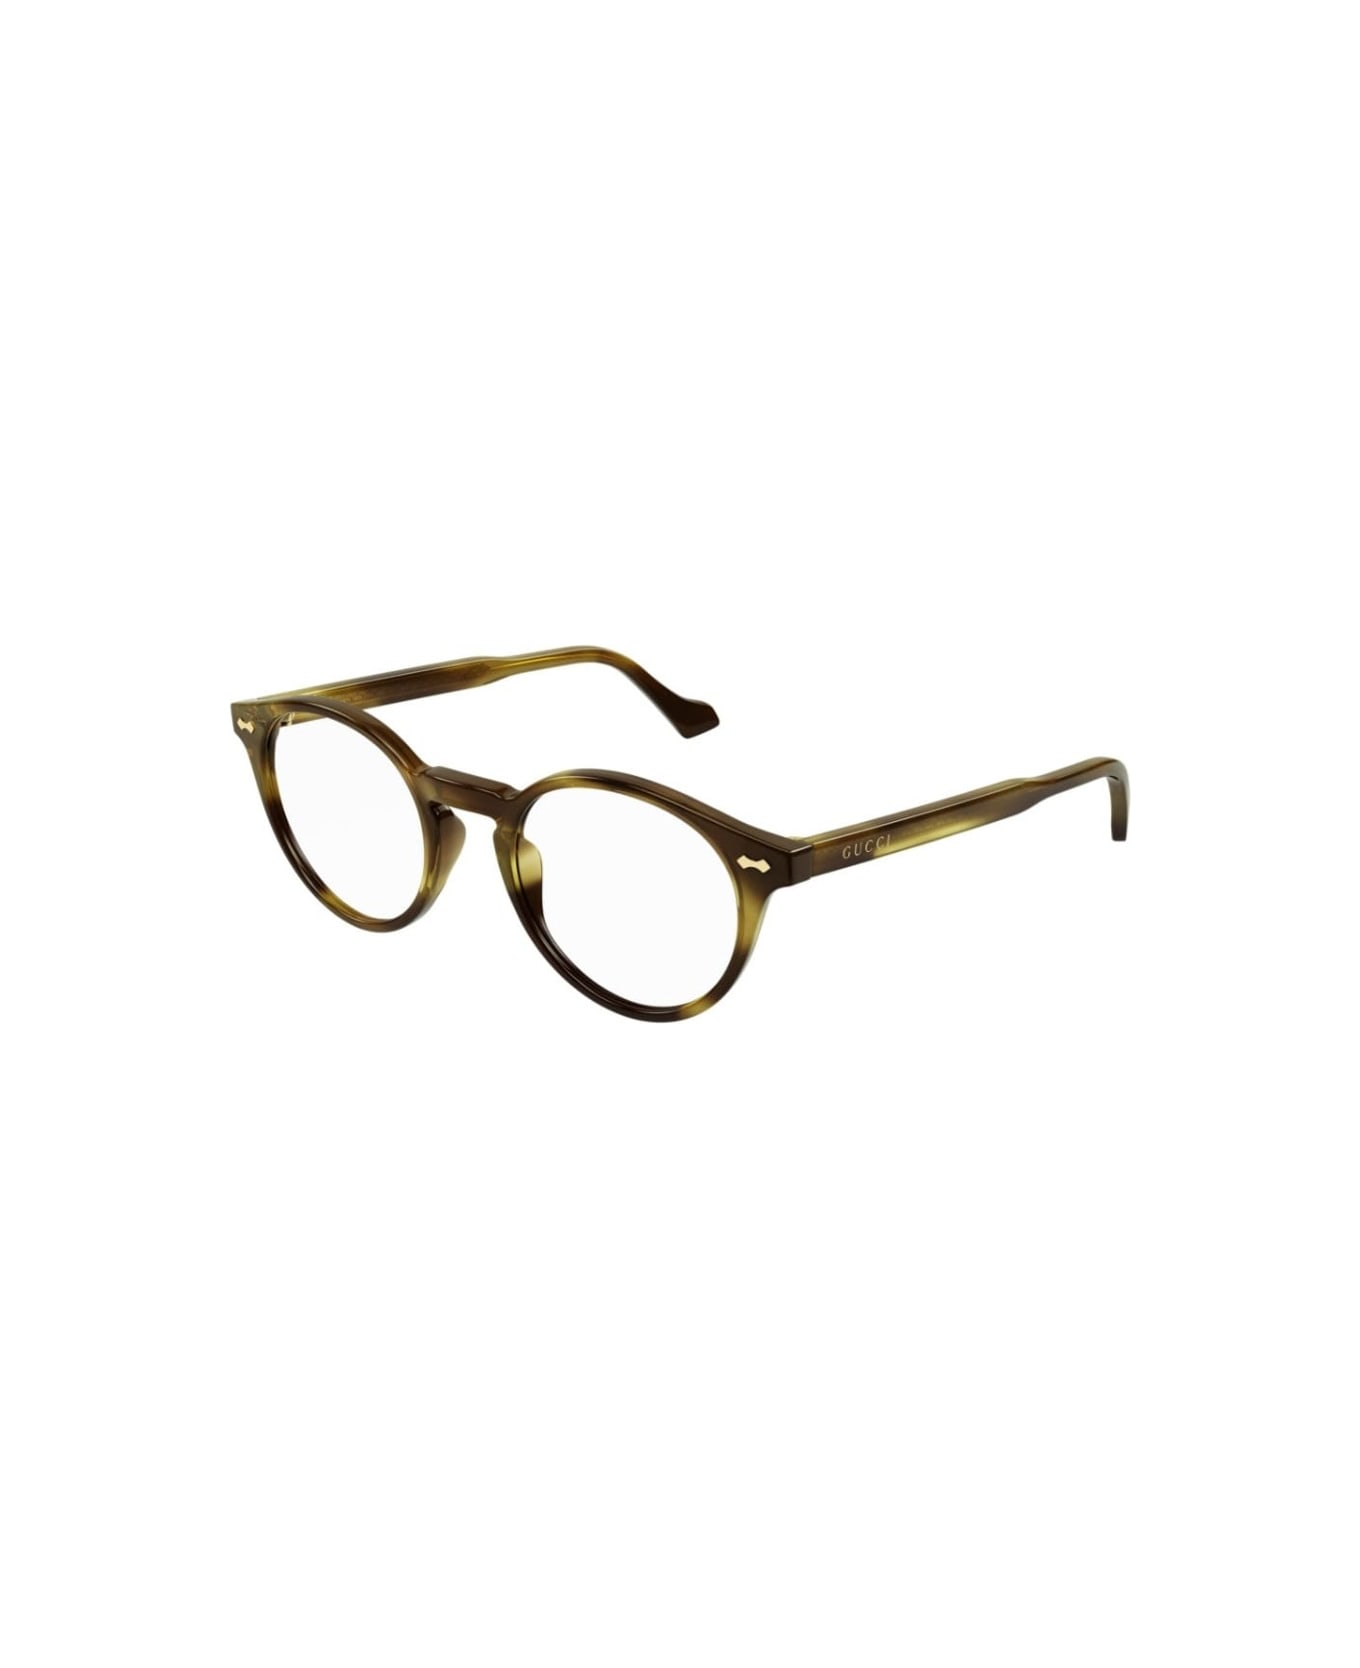 Gucci Eyewear GG0738 005 Glasses - Ambra scuro